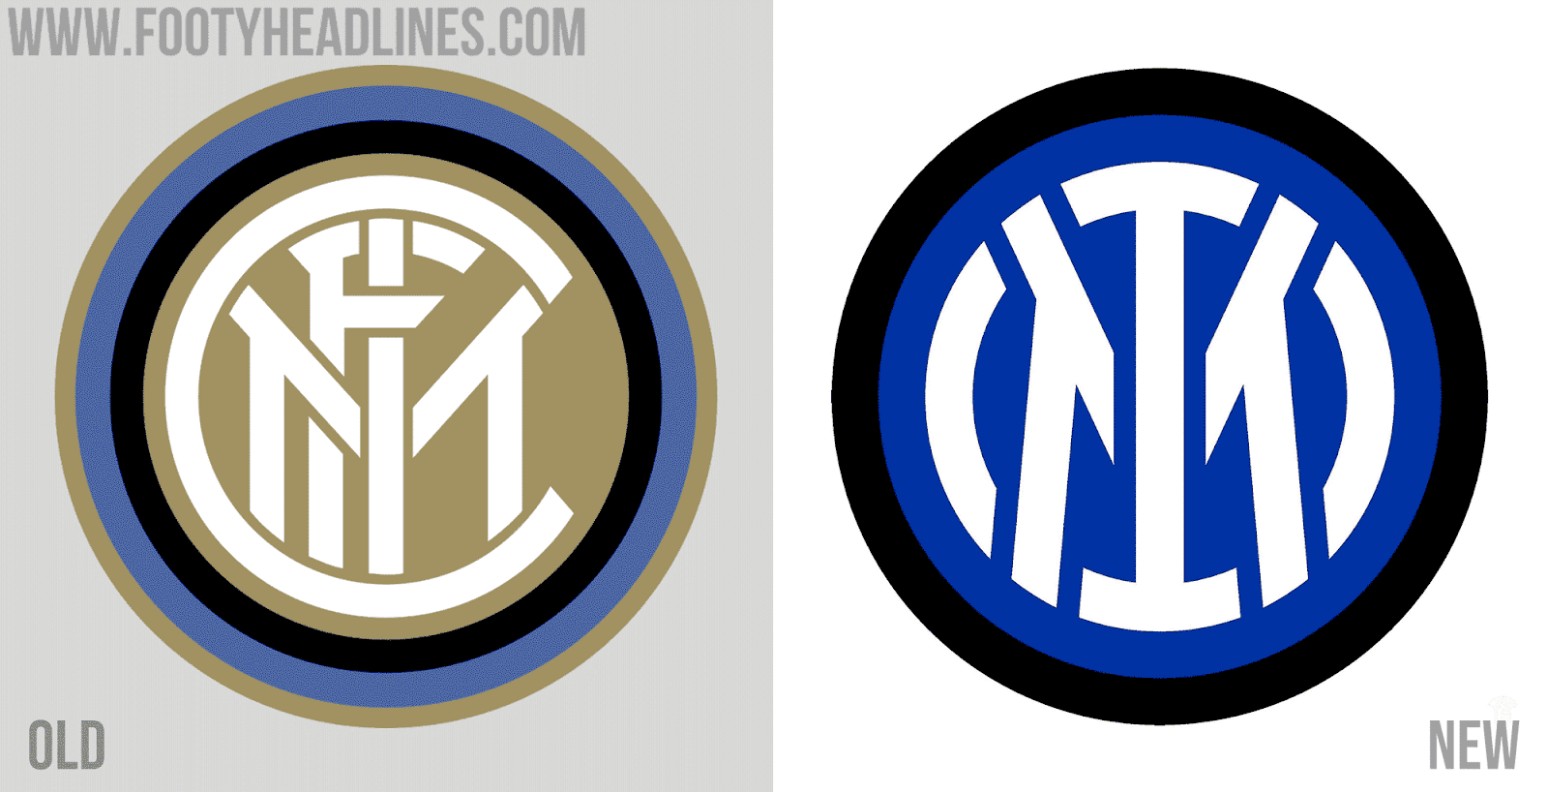 根据此前媒体公布的信息,国际米兰的新队徽将在原队徽基础上进行简化